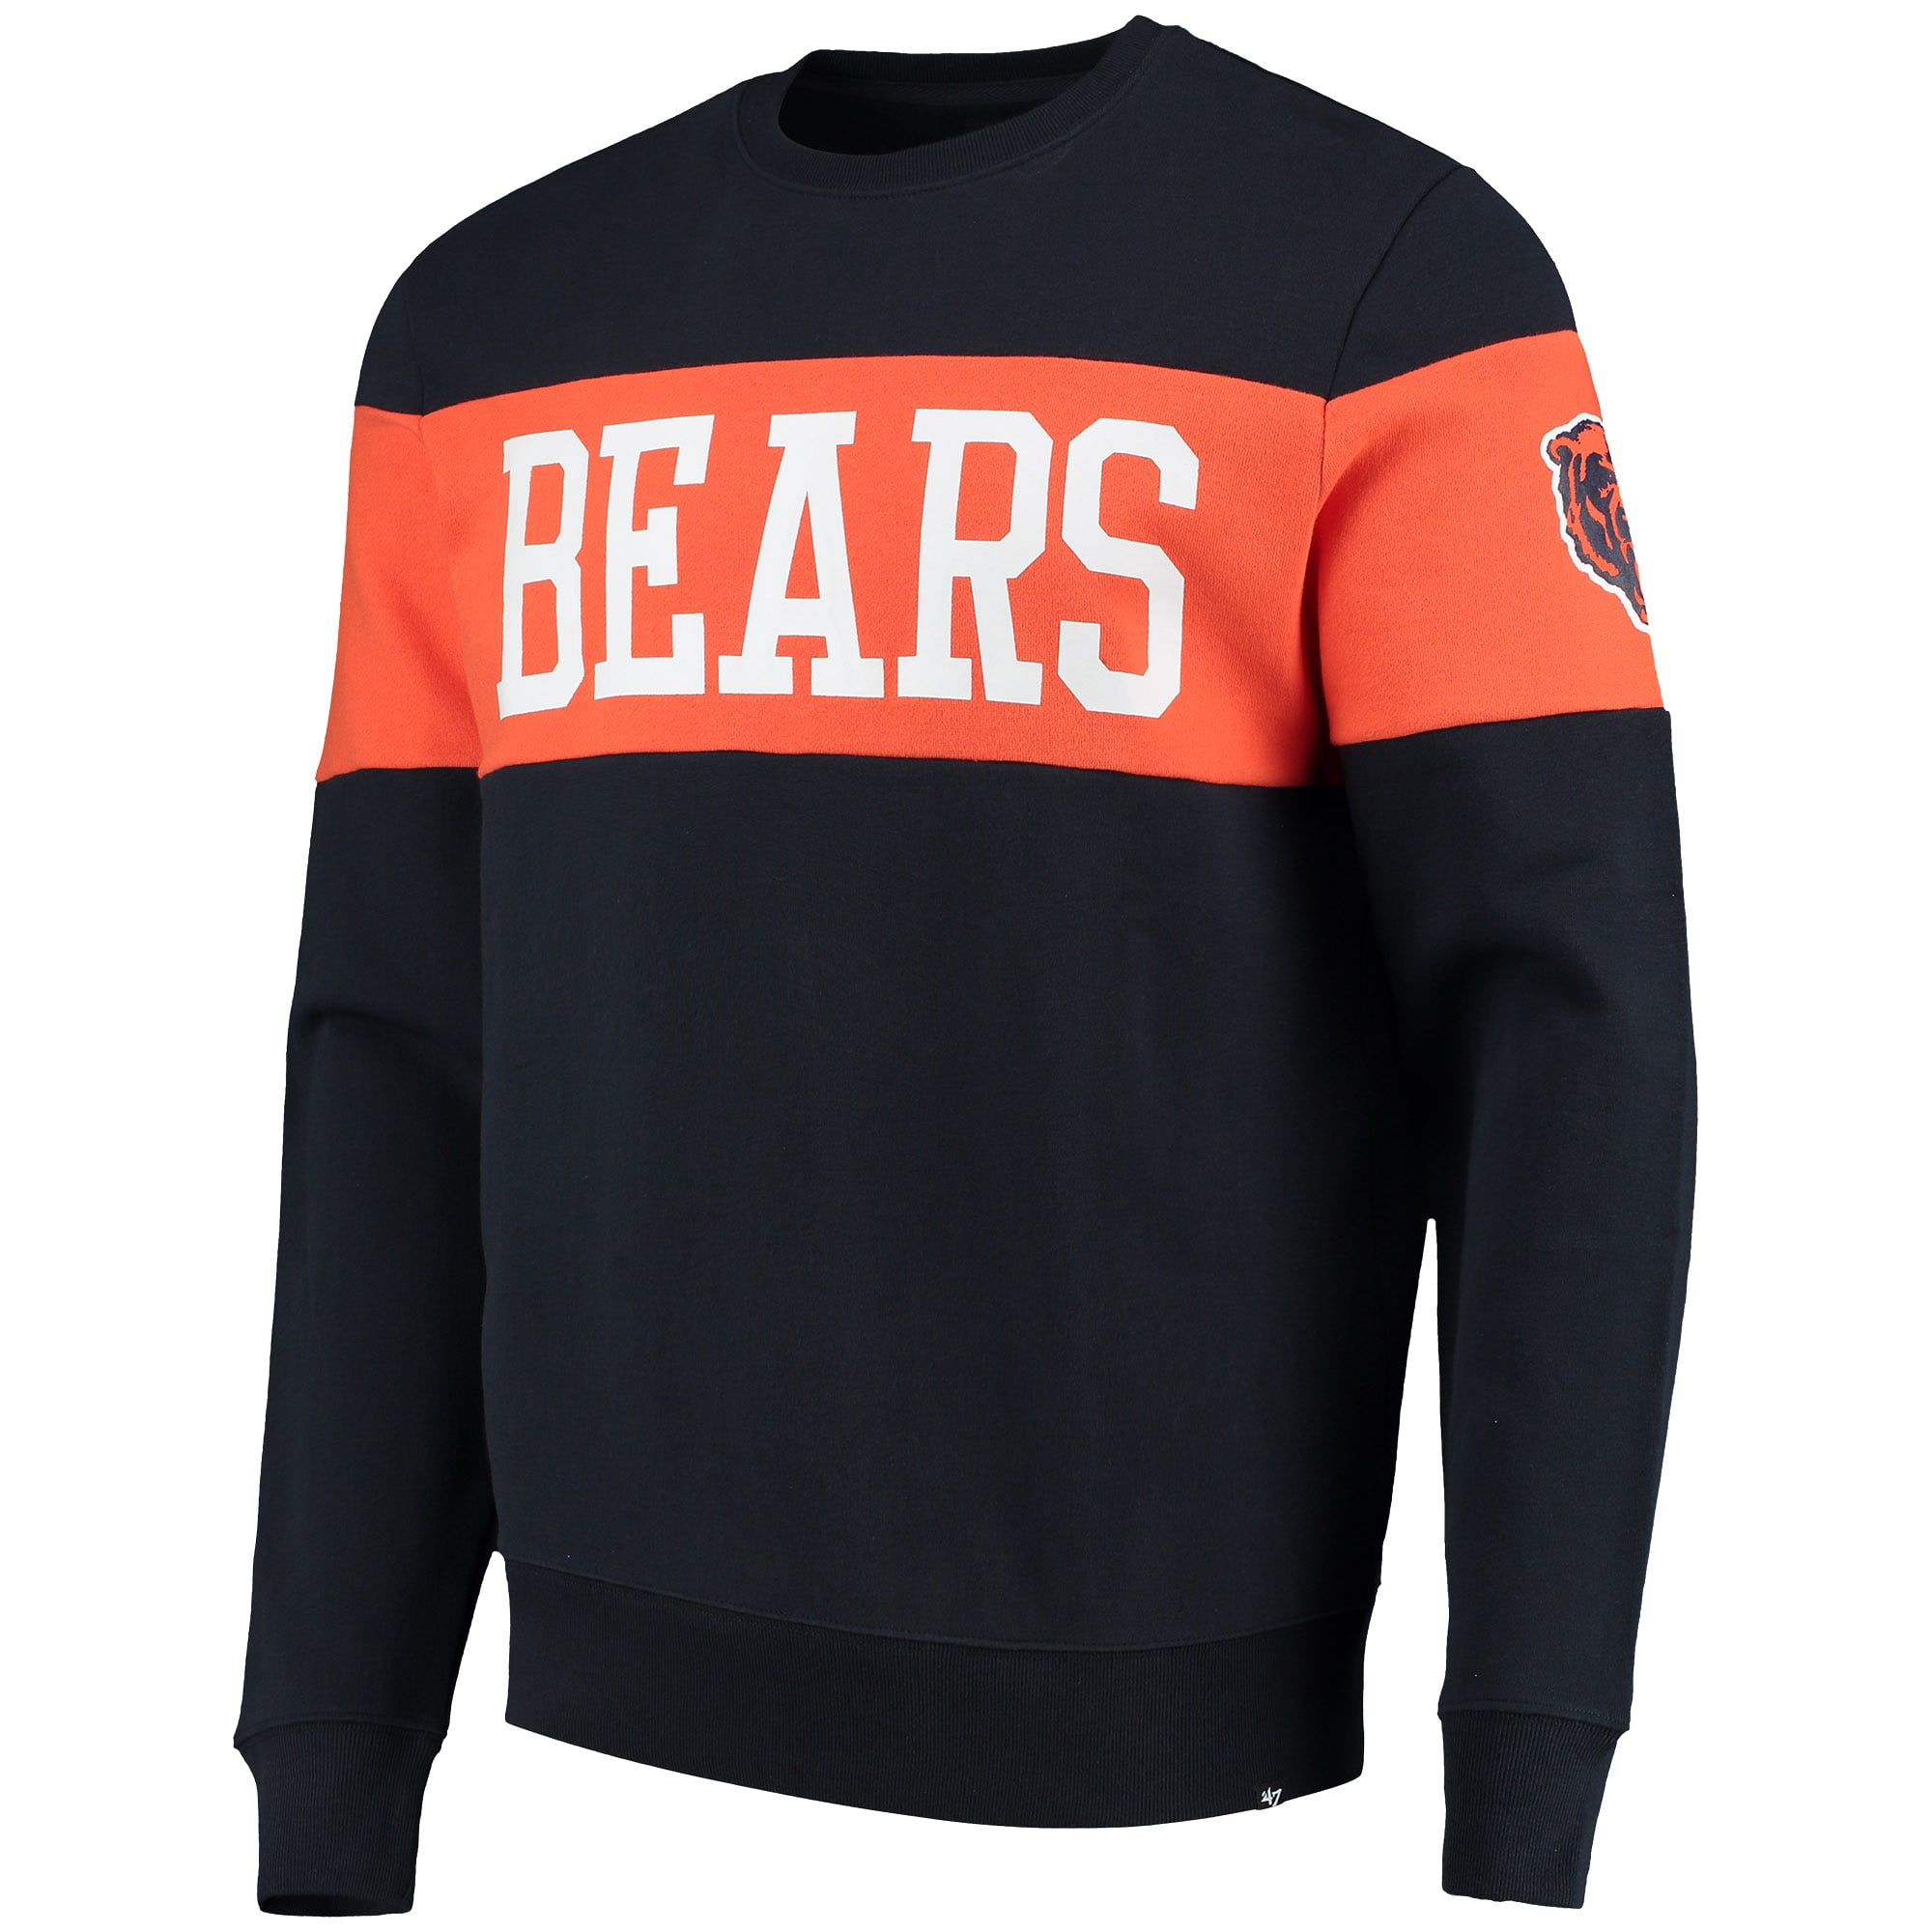 chicago bears retro sweatshirt